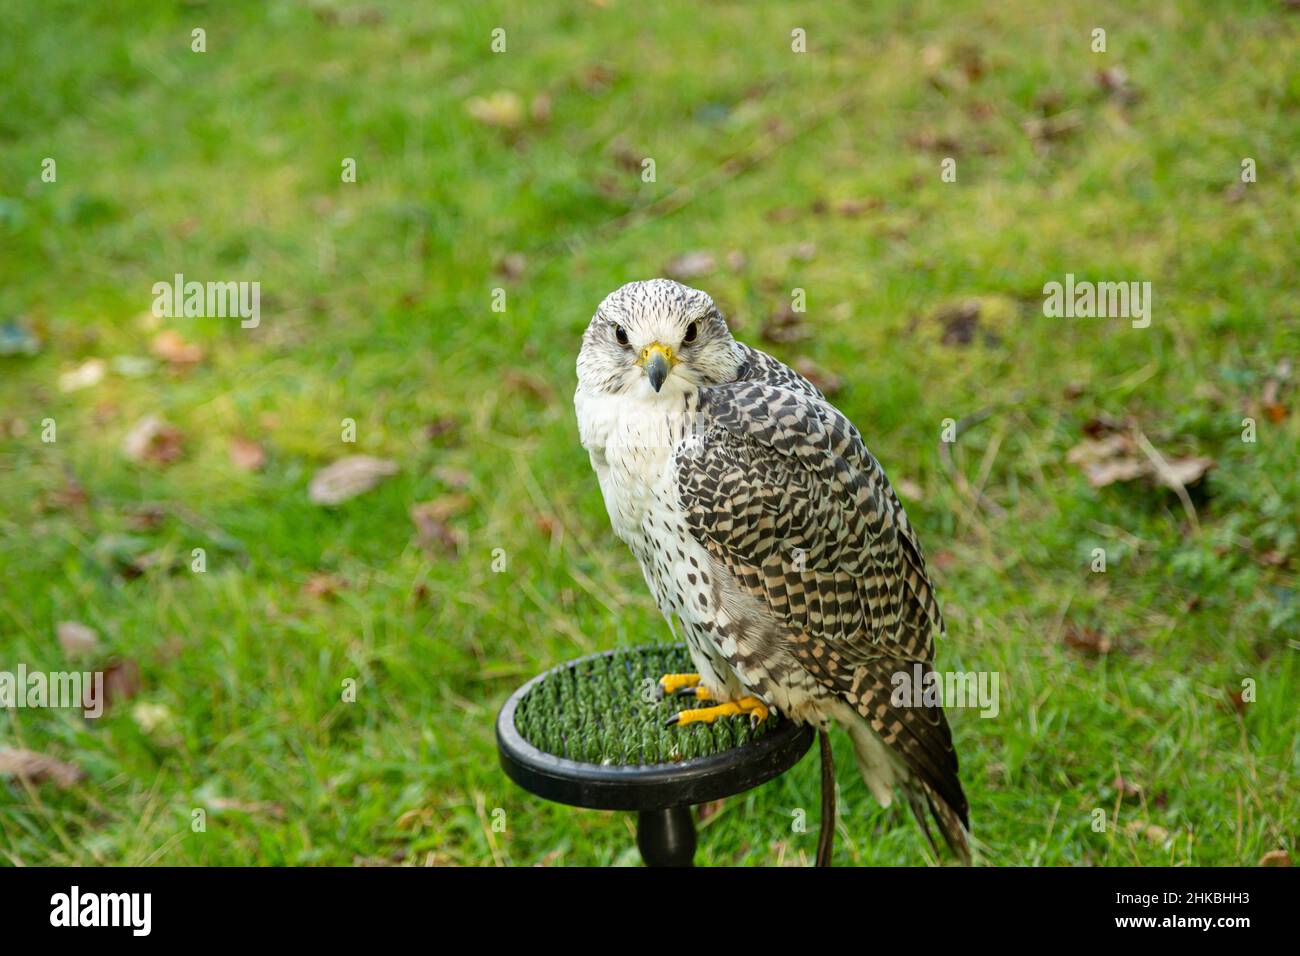 A peregrine falcon in captivity in Britain Stock Photo